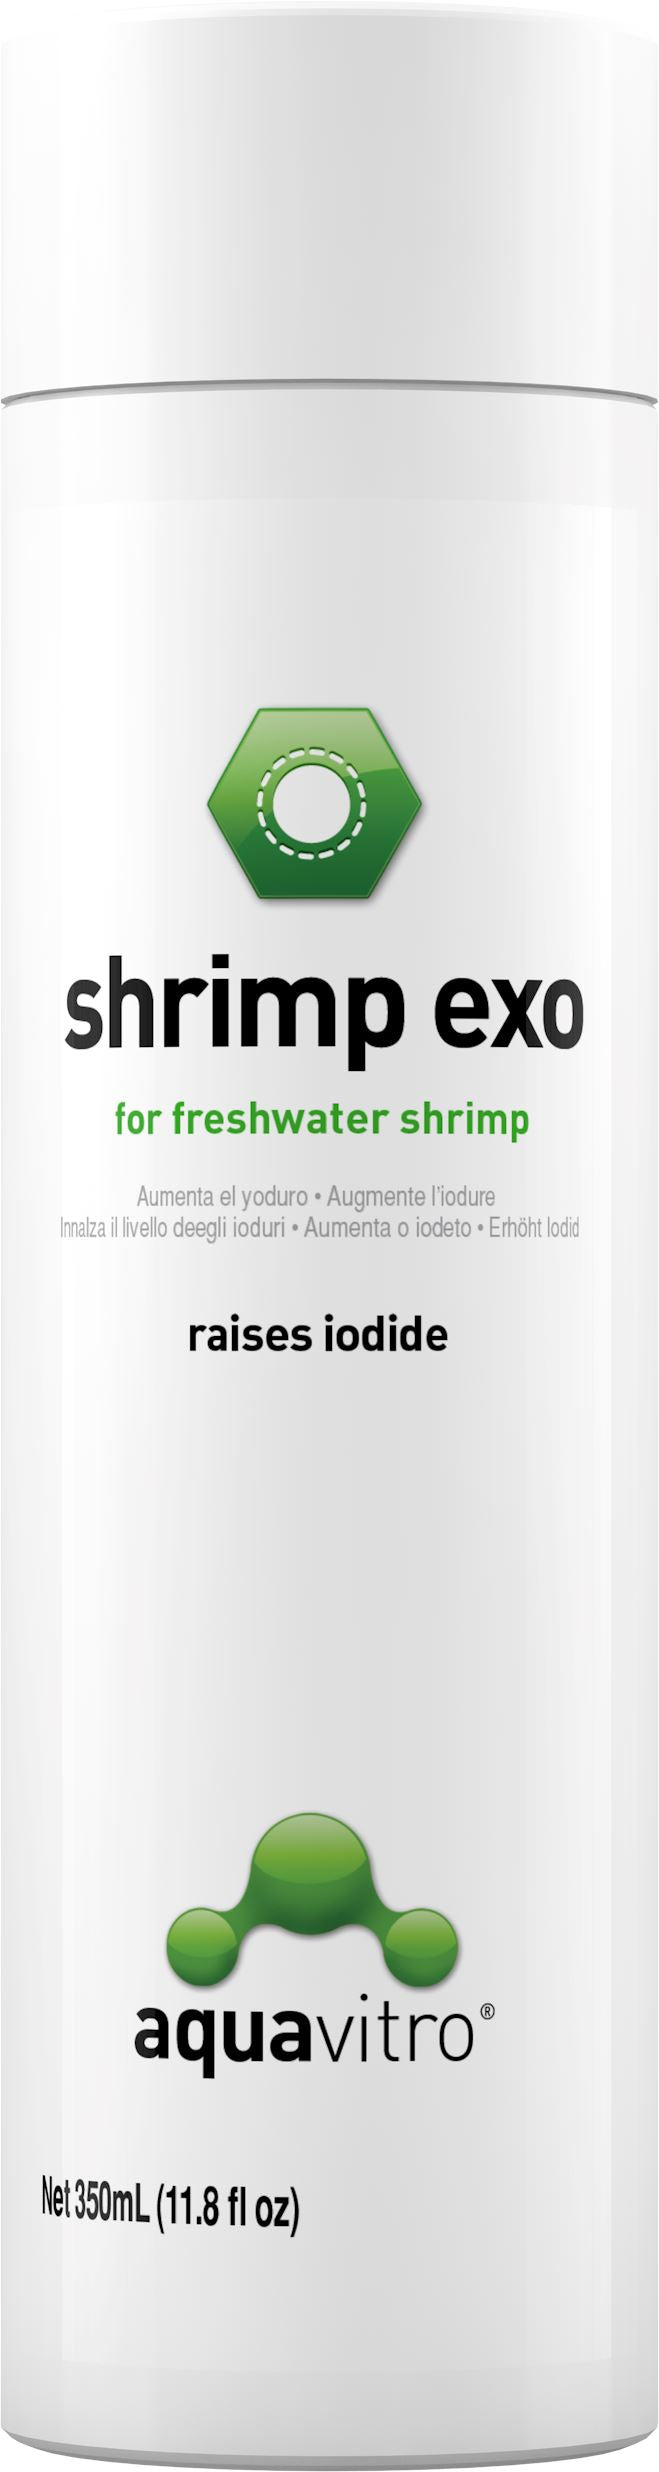 aquavitro Shrimp Exo - 150 ml